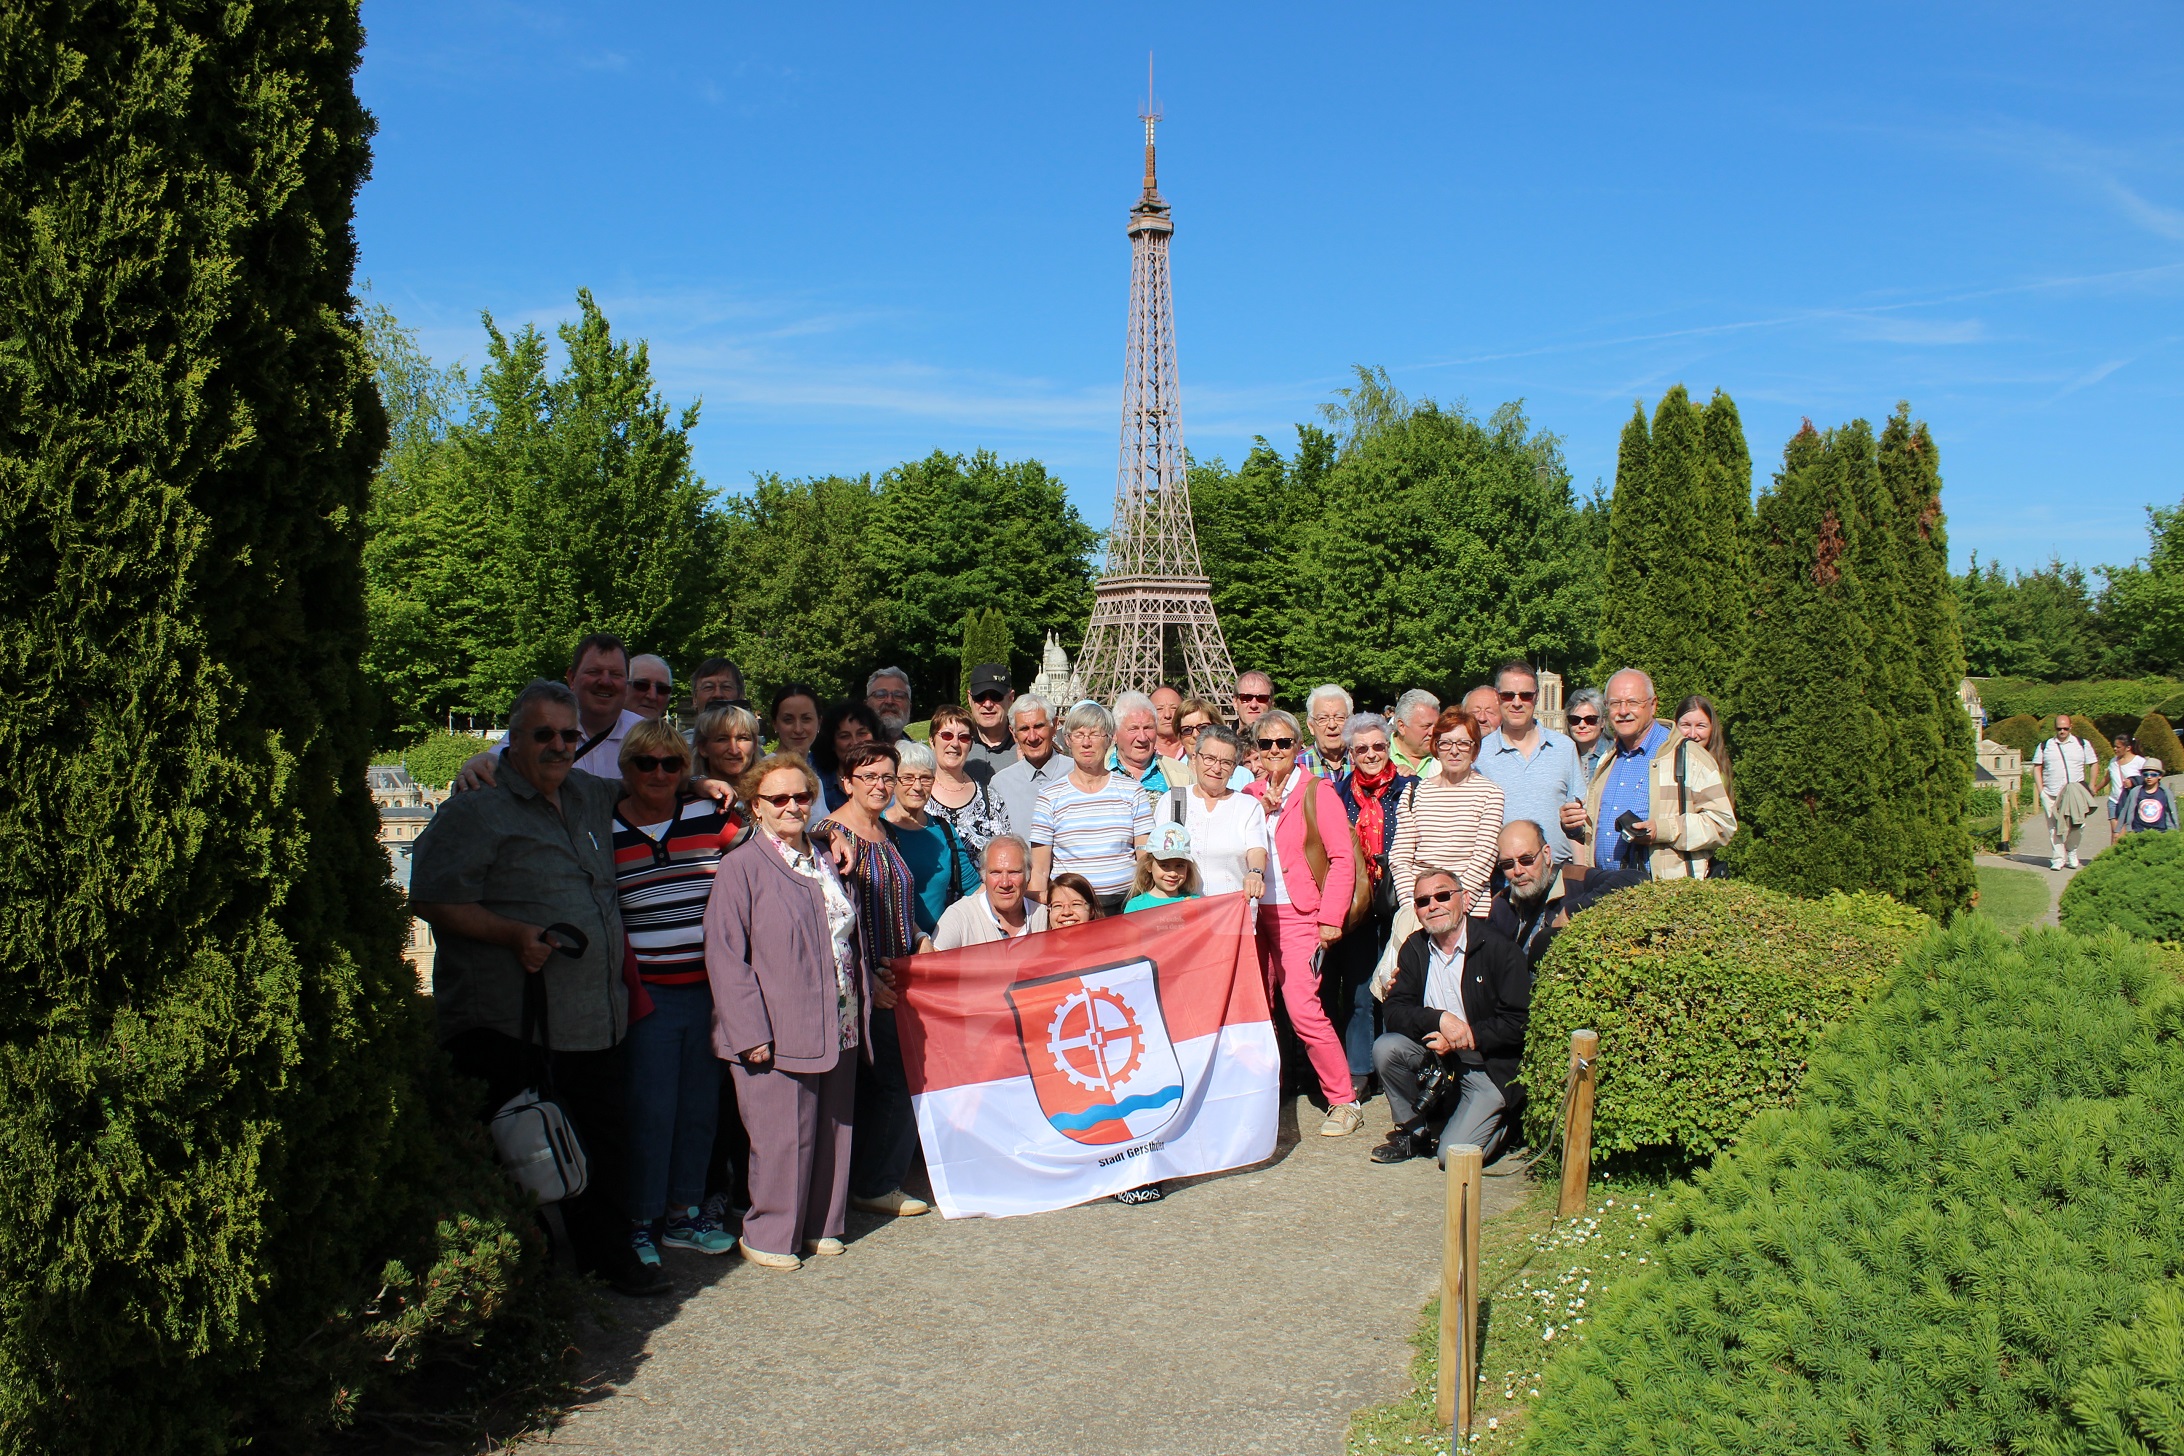 Gruppenbild vor dem "Eiffelturm"